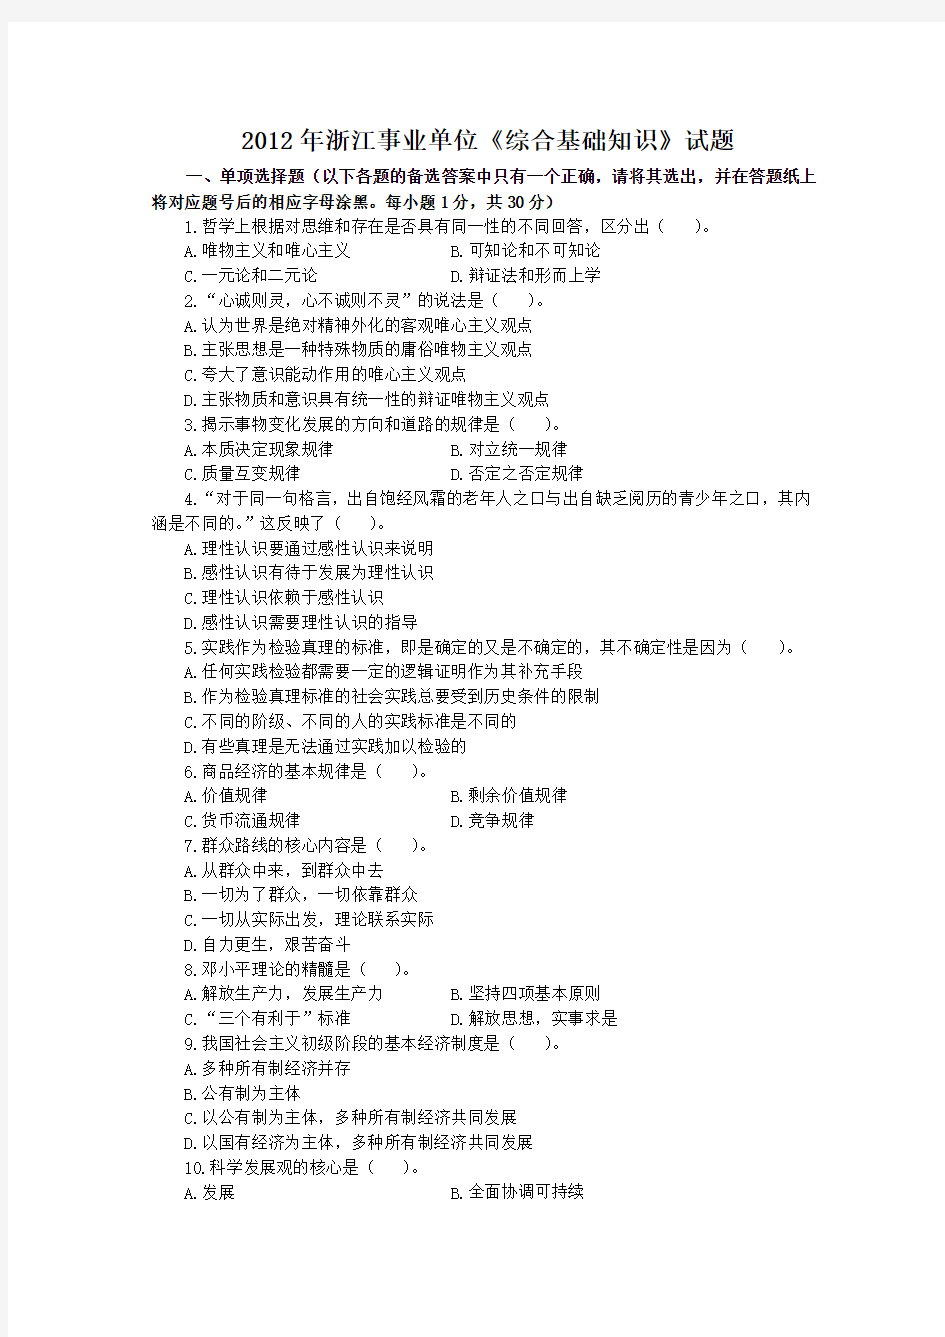 2012年7.14浙江省(统考)温州市事业单位《综合基础知识》试题答案解析